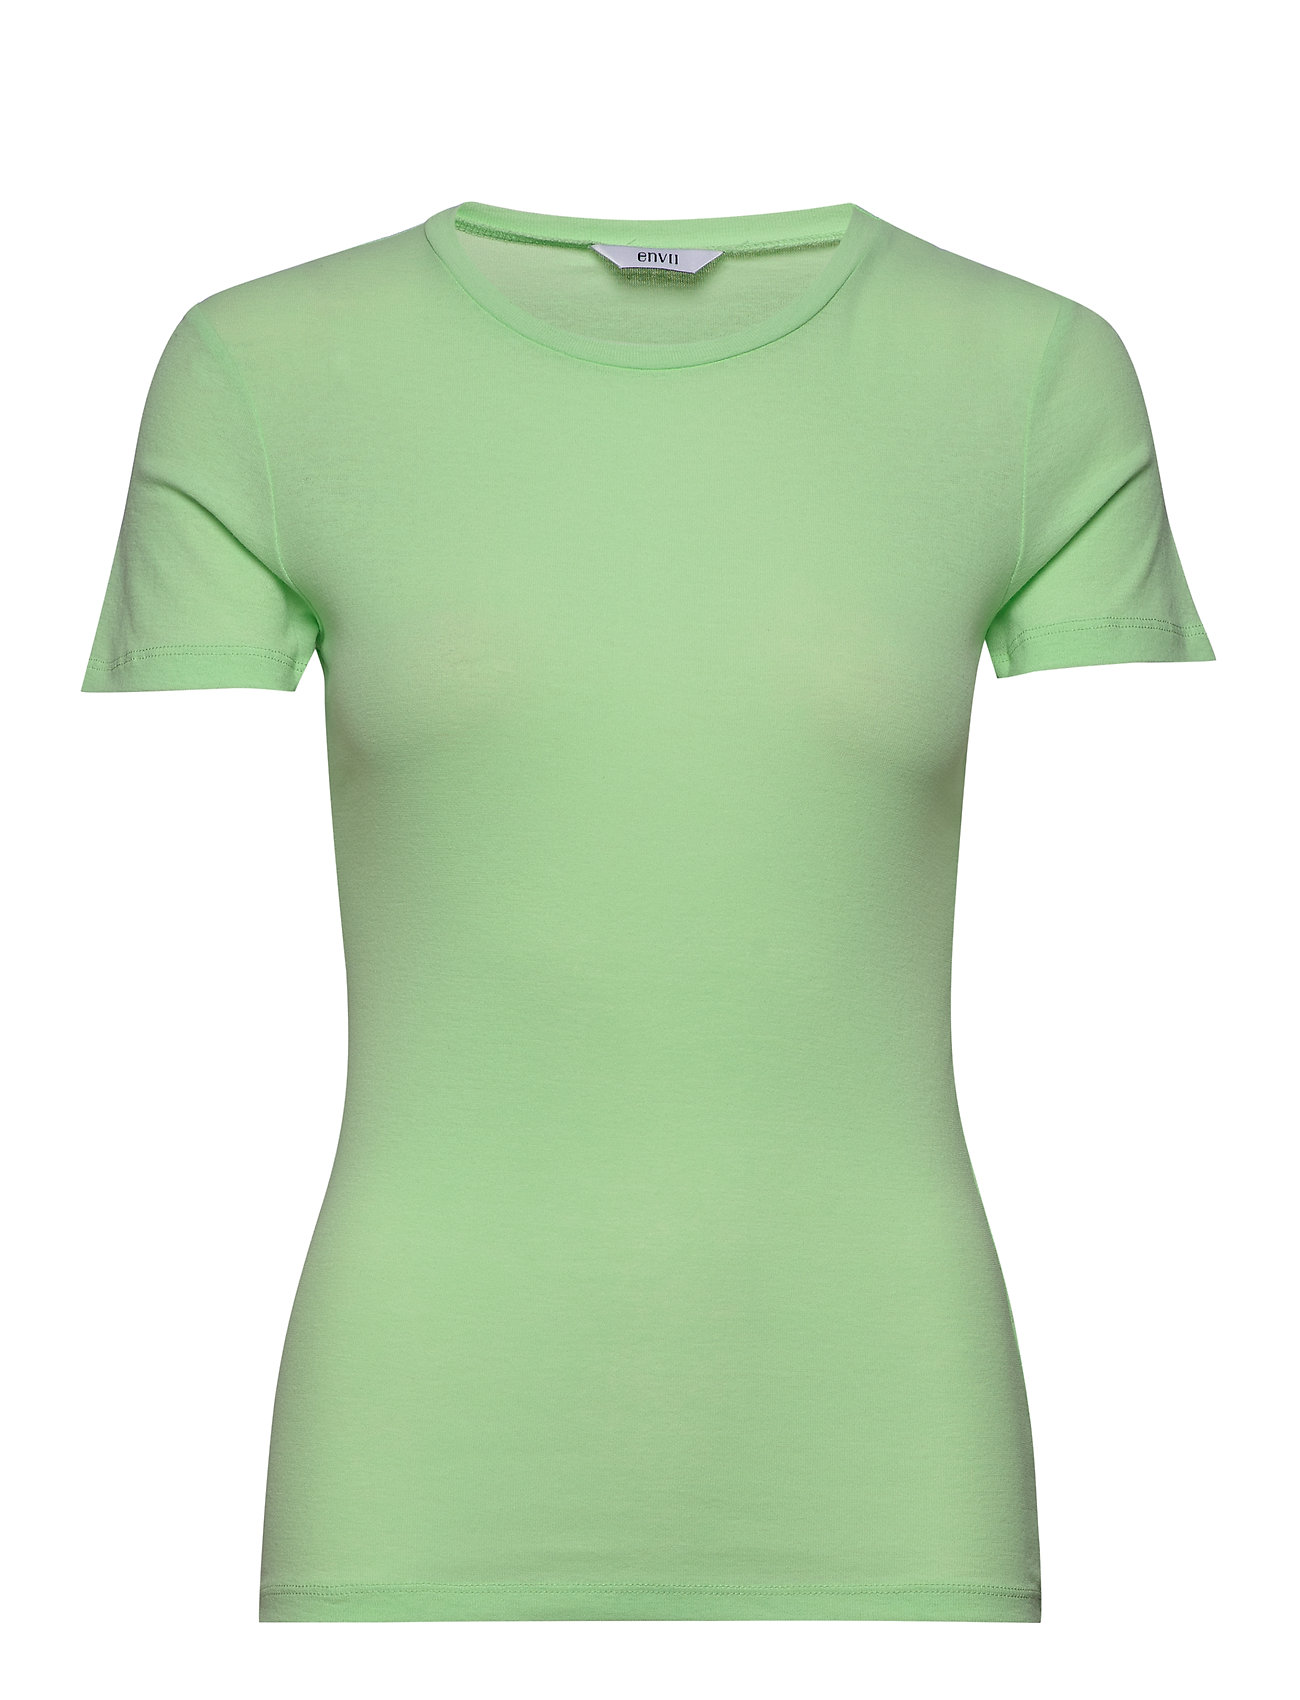 Envelda Ss Tee 5328 T-shirts & Tops Short-sleeved Grön Envii